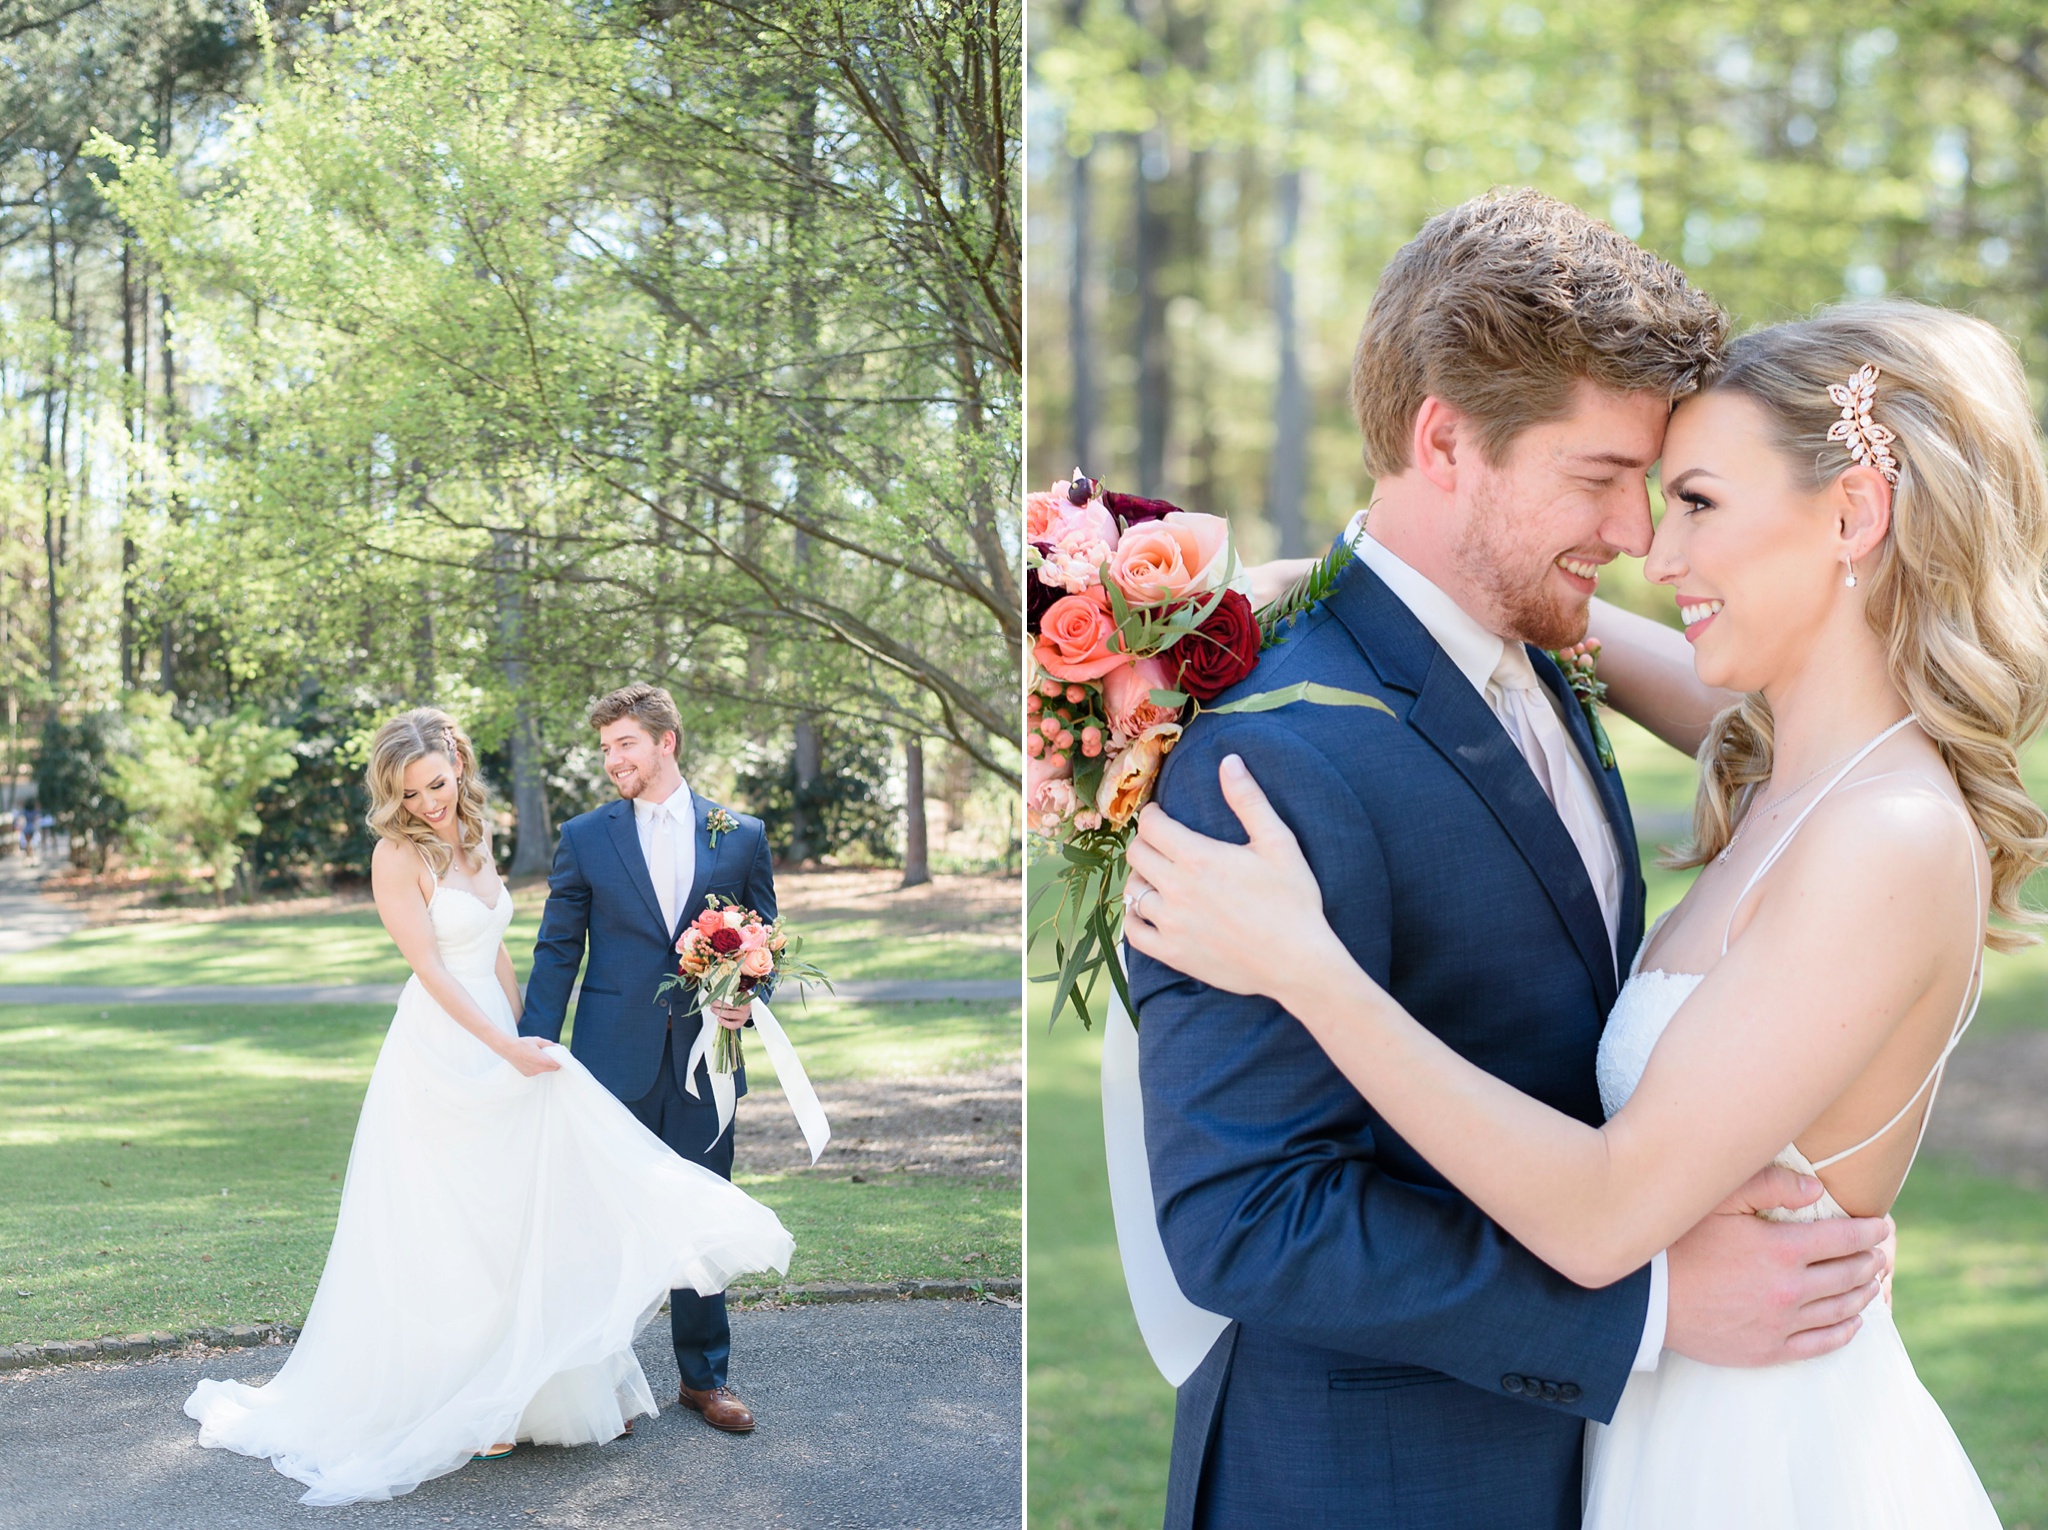 Aldridge Gardens Spring Wedding | Birmingham Alabama Wedding Photographers_0070.jpg